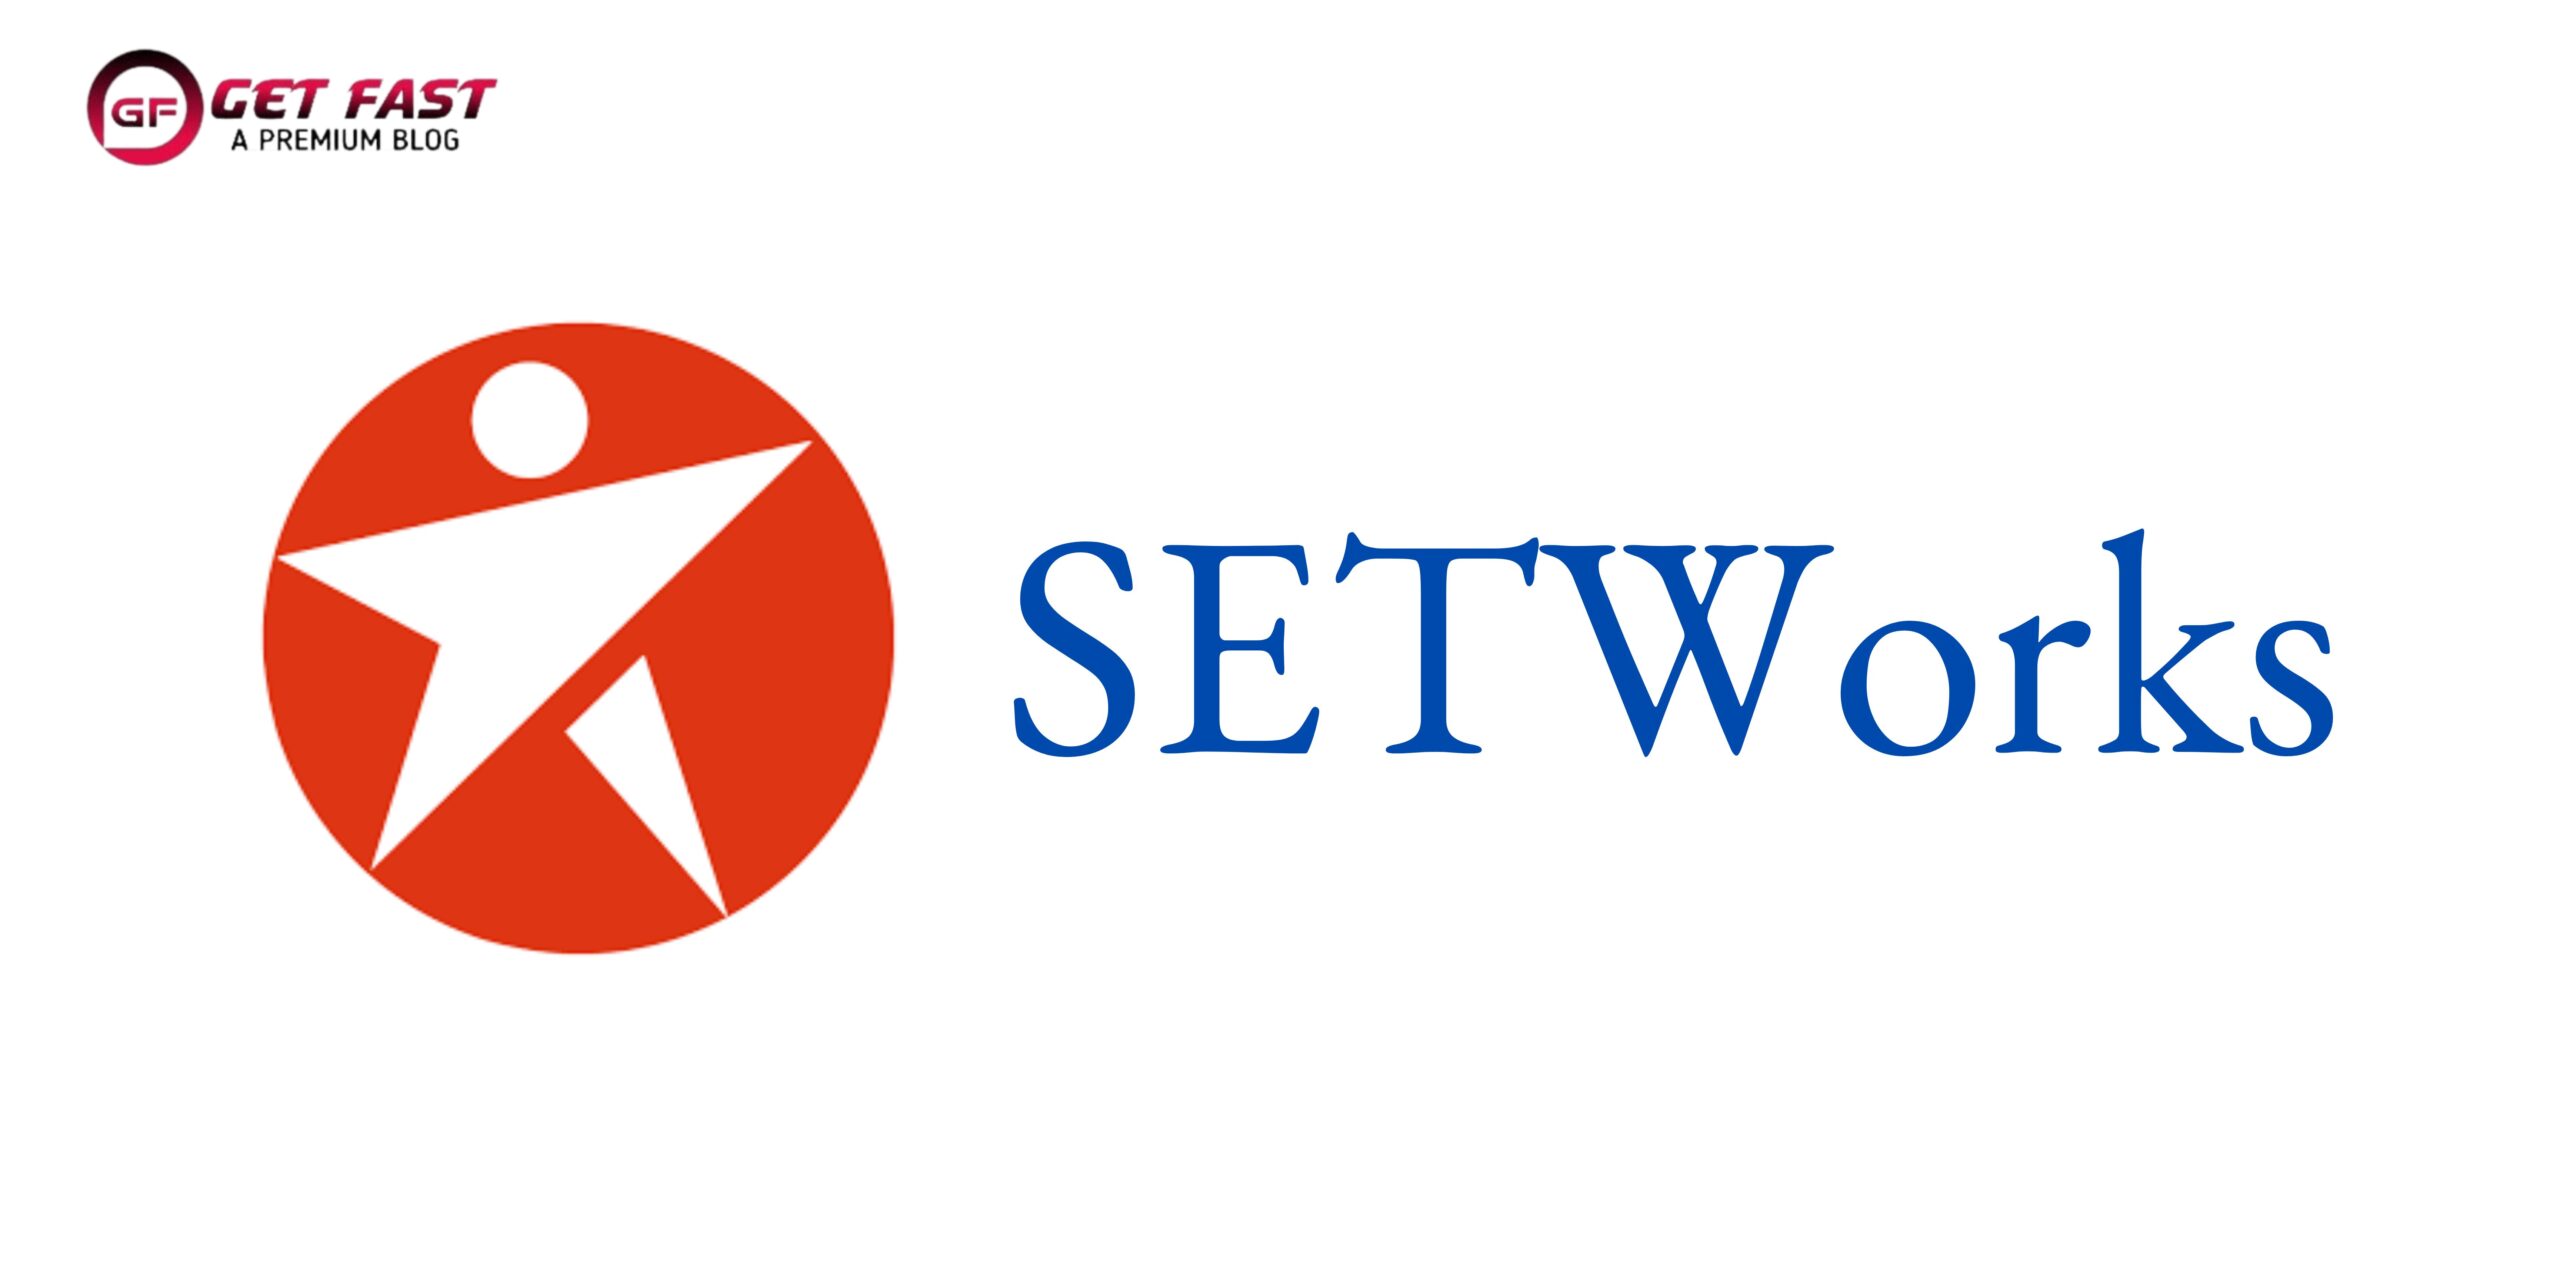 SETWorks